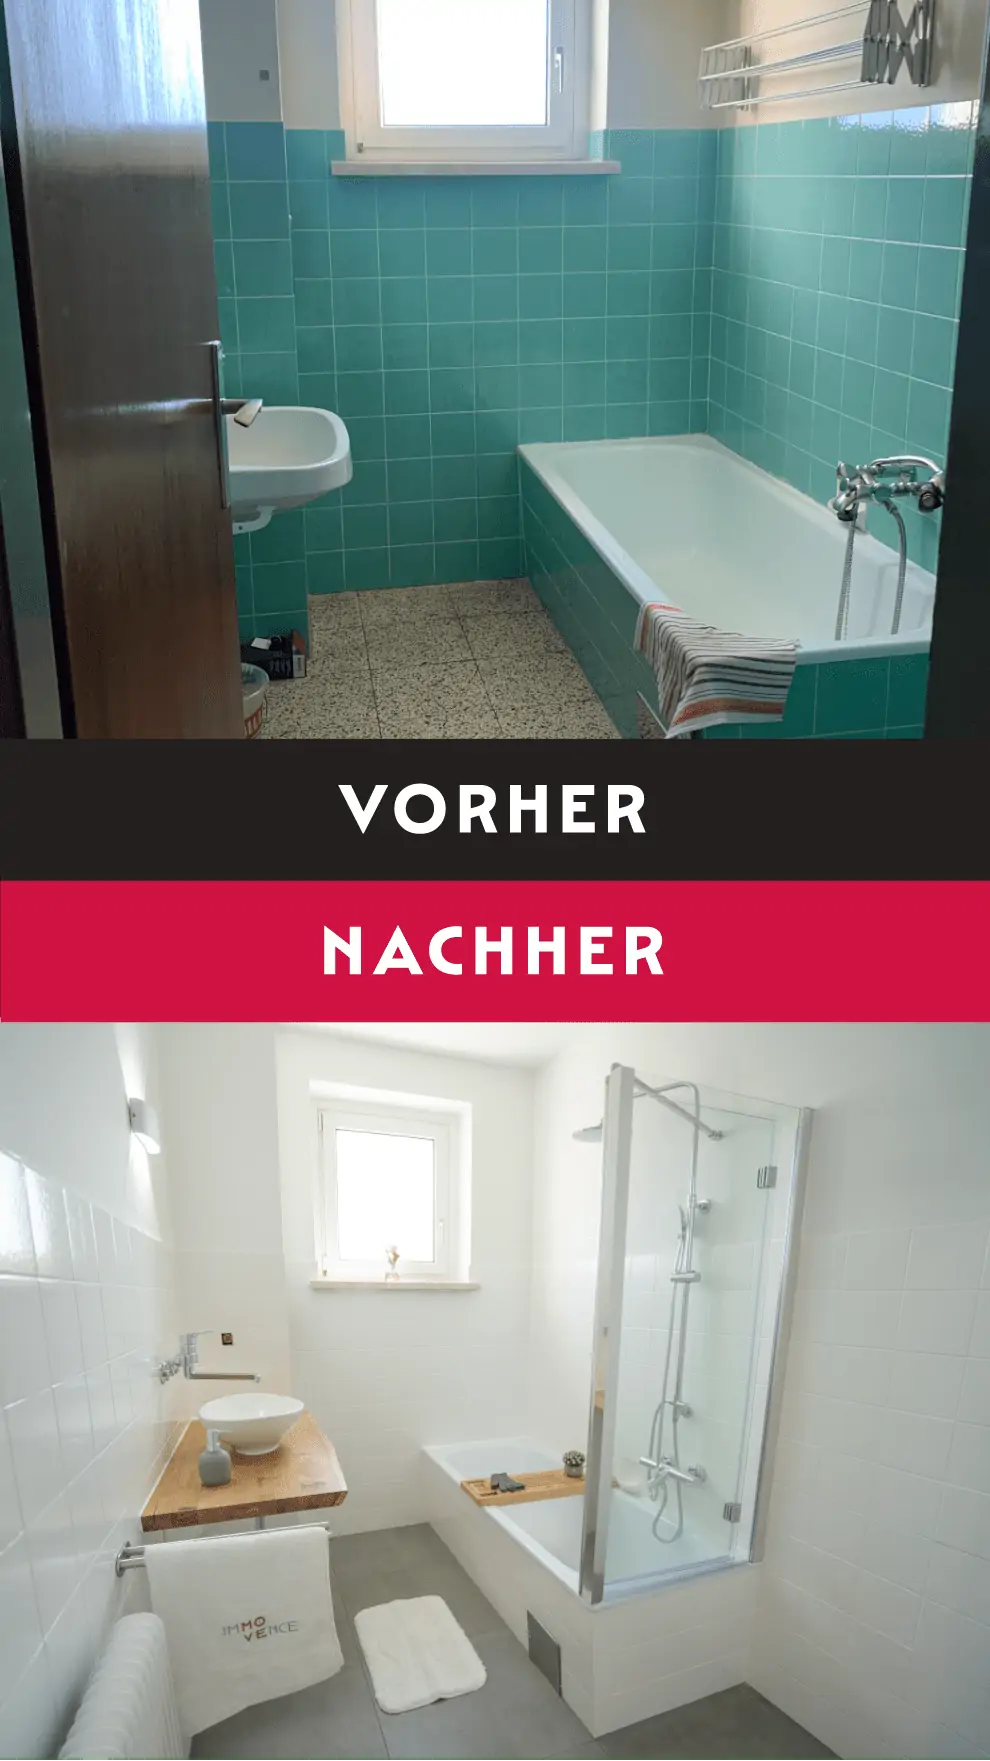 Eine Fotomontage mit Vorher-Nachher-Vergleich eines ursprünglich blau gefliesten Badezimmers